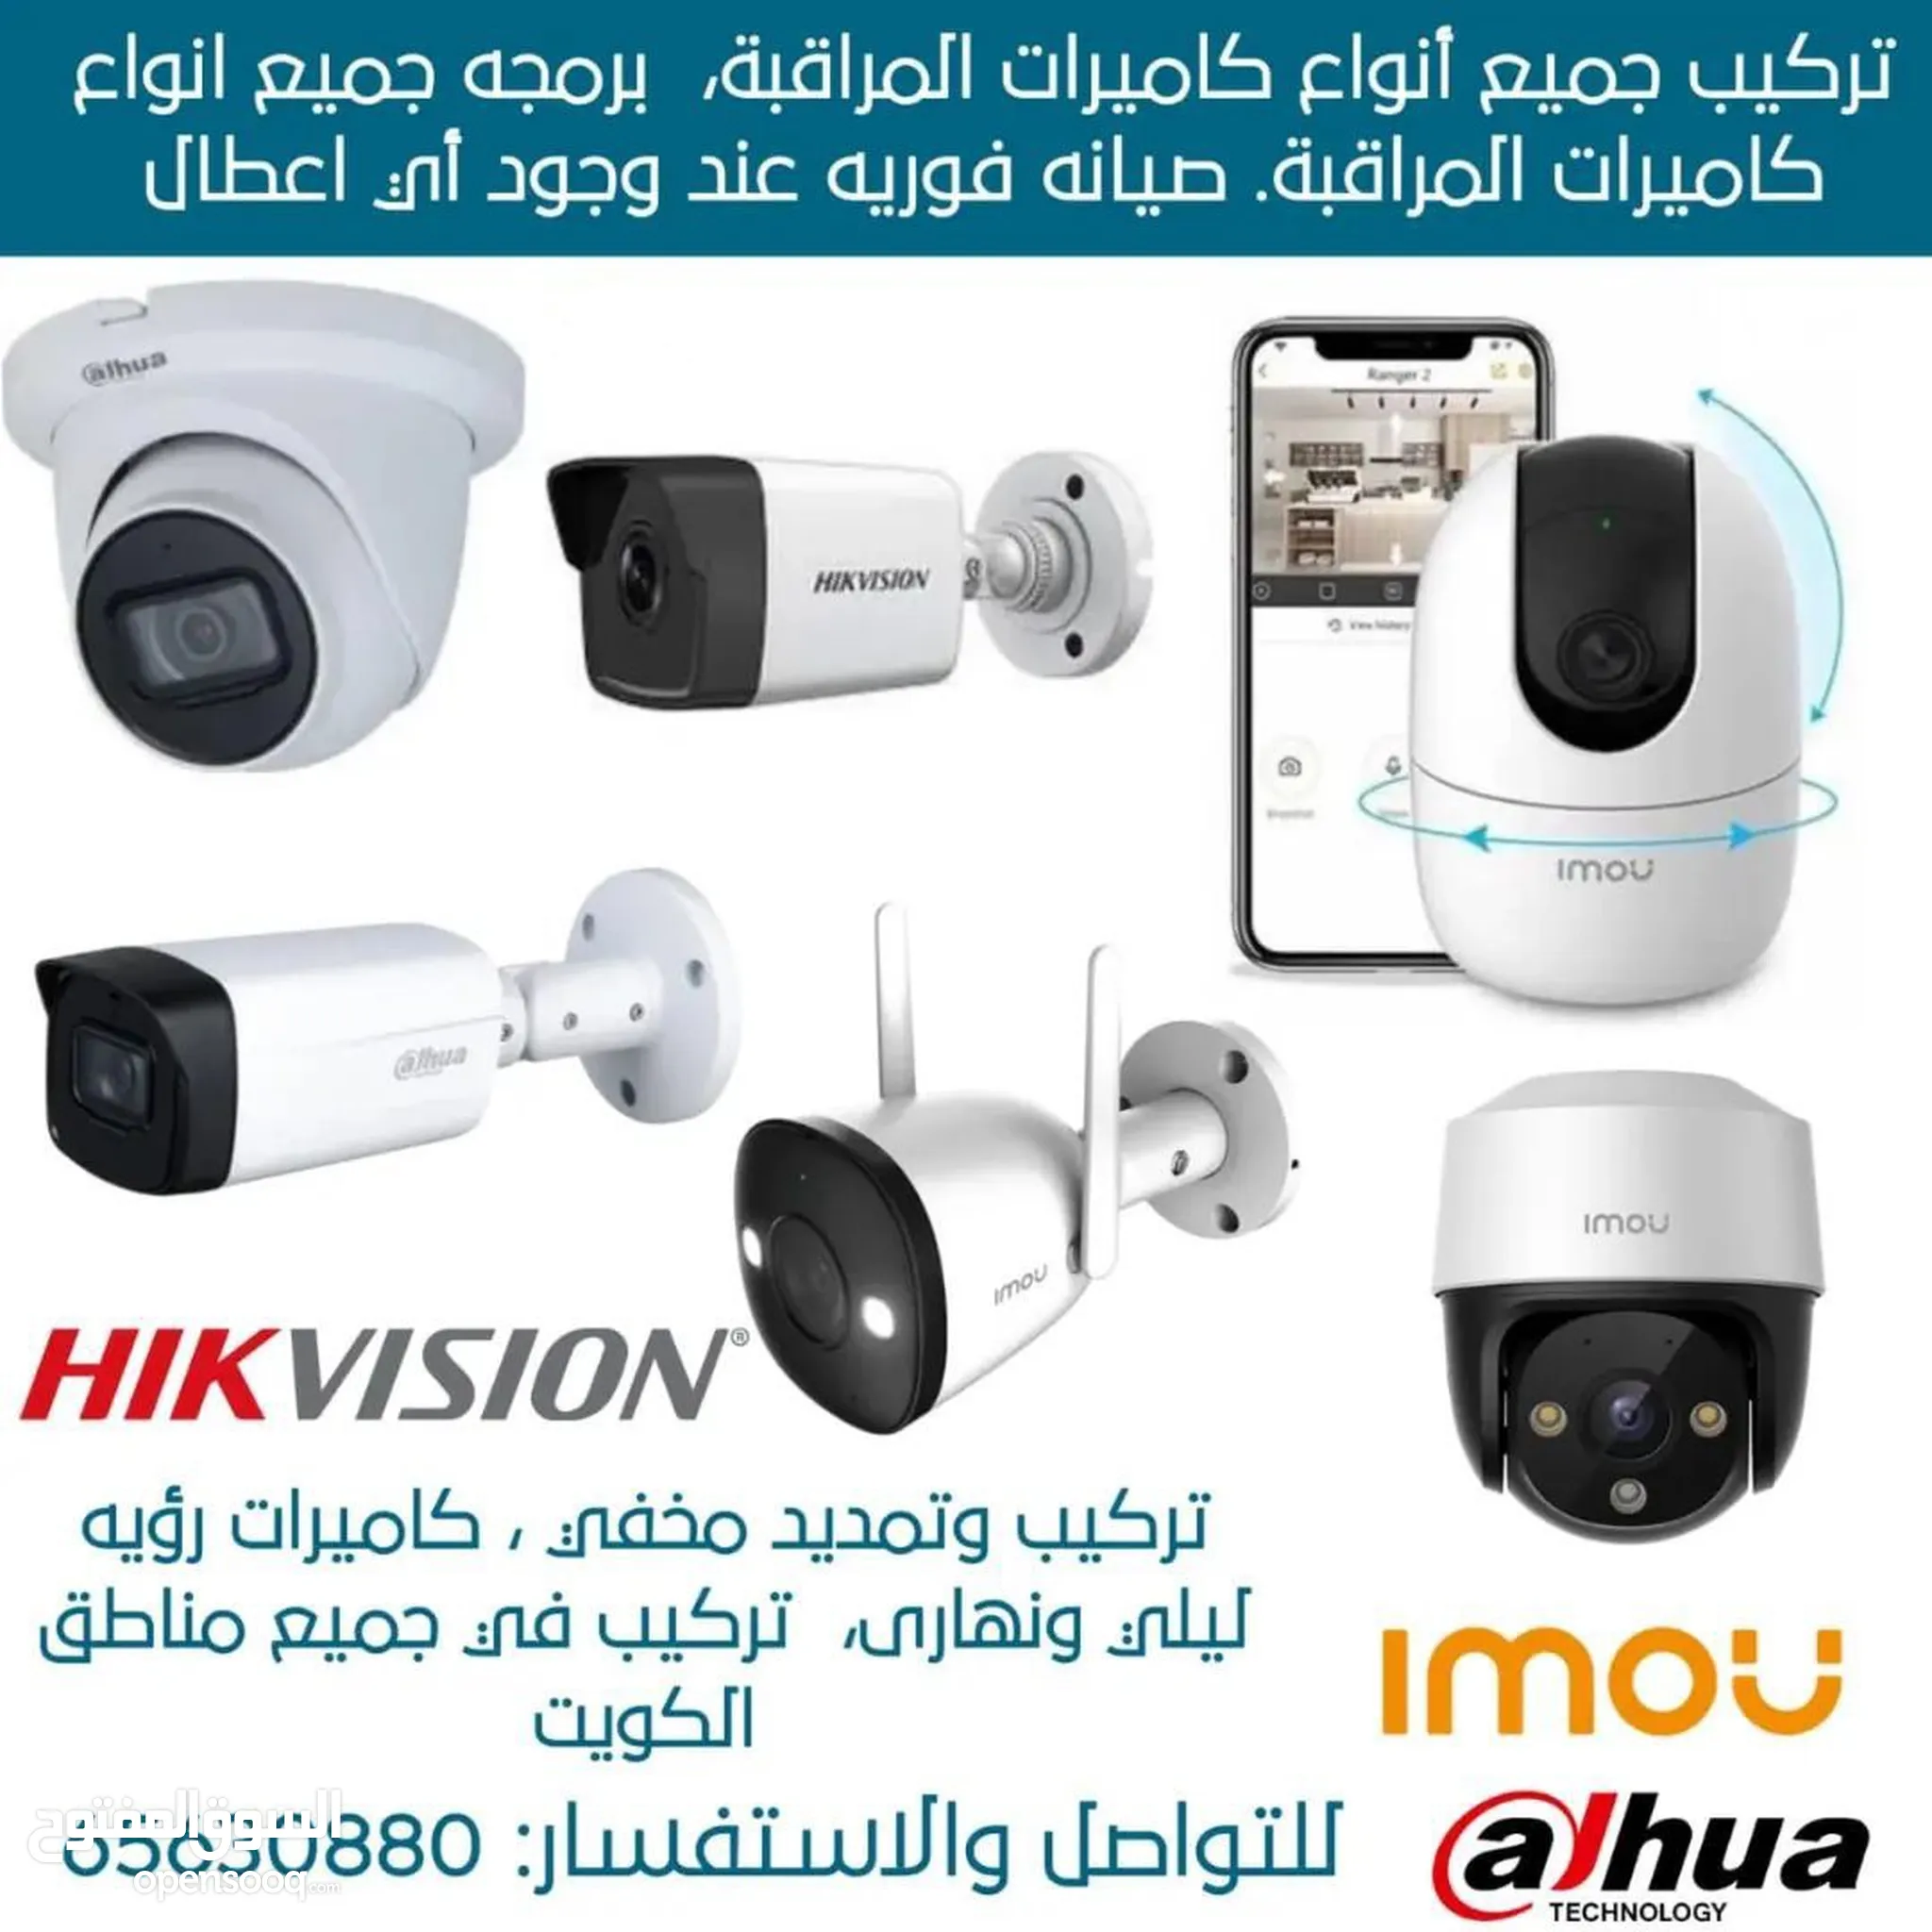 كاميرات مراقبة للبيع في الكويت : كاميرات حرارية : ليلية : افضل الاسعار |  السوق المفتوح